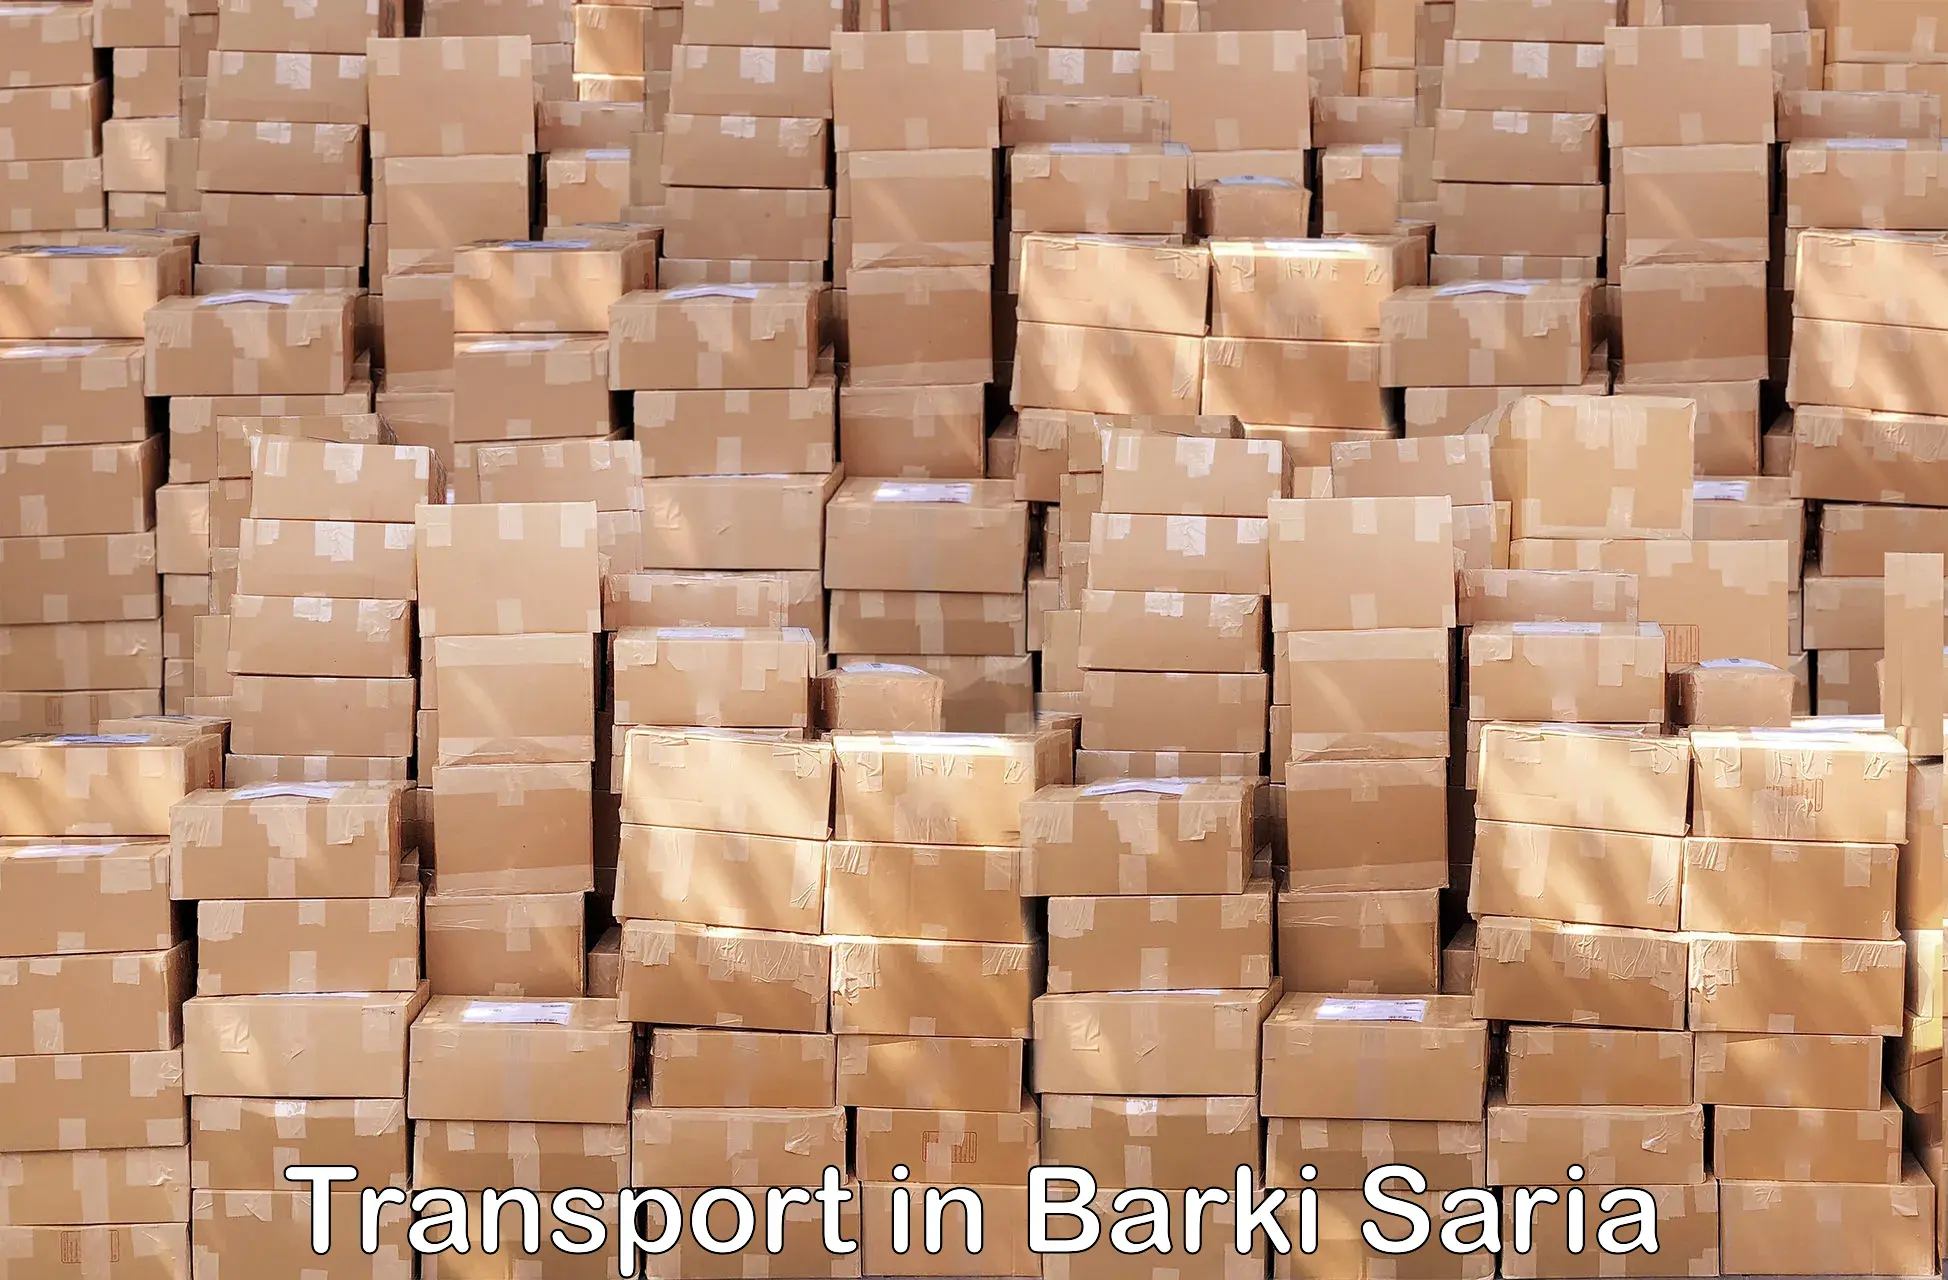 Furniture transport service in Barki Saria